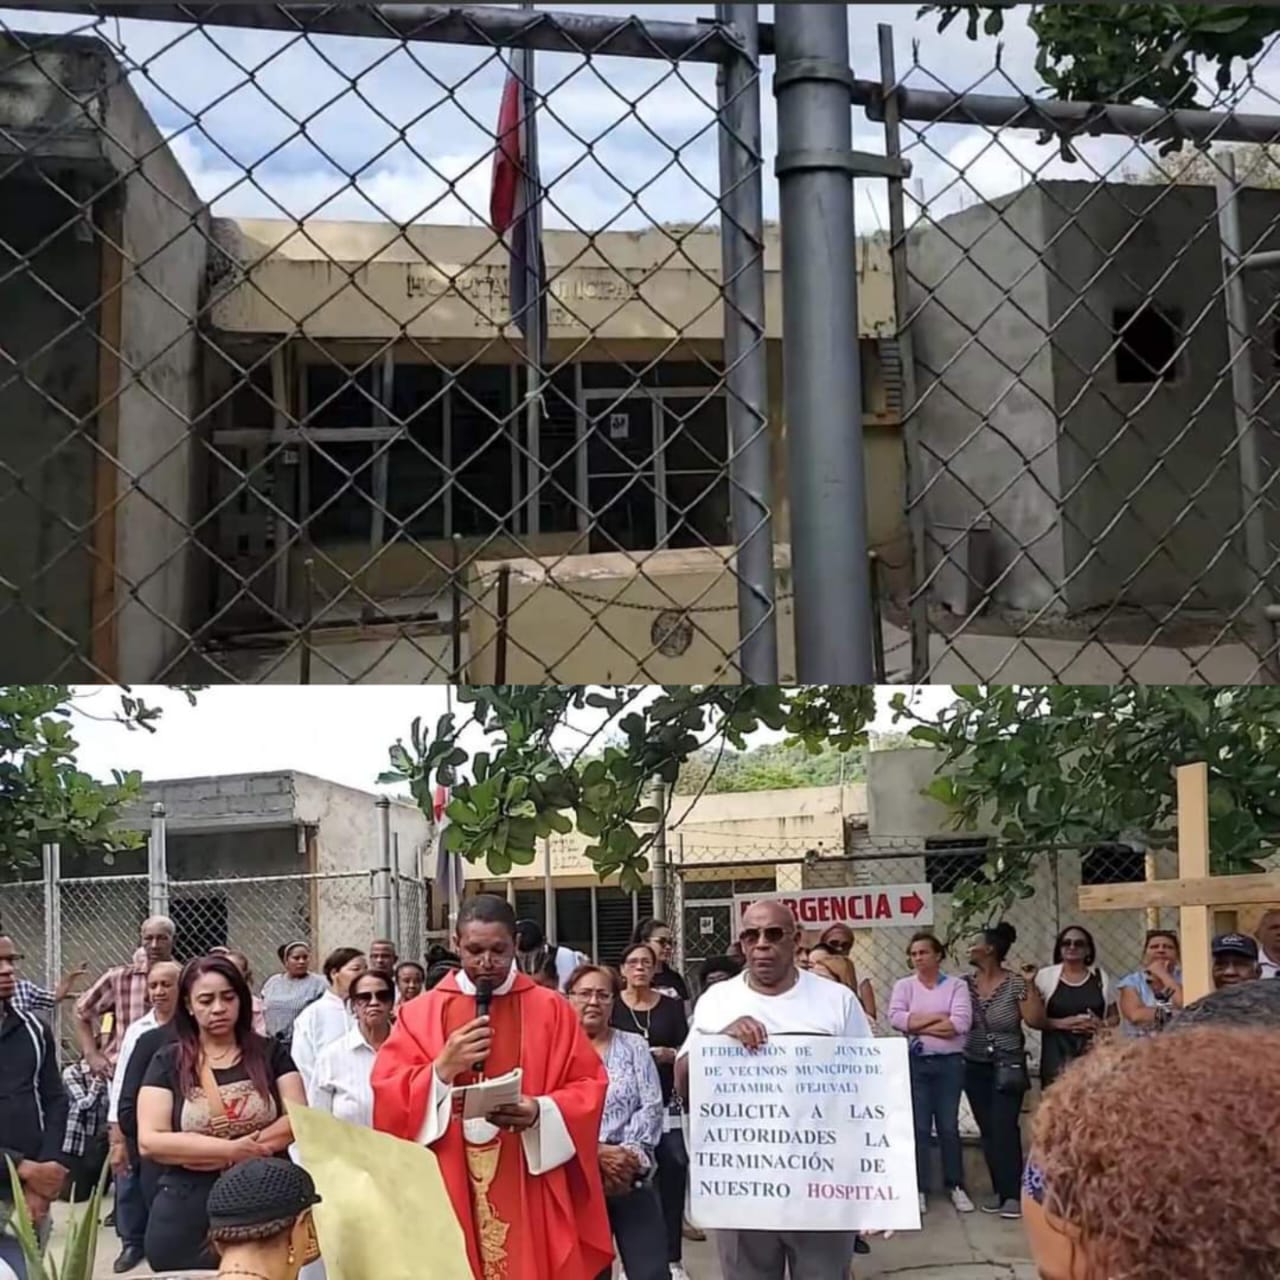 Protestan en demanda de terminación de hospital en Altamira Puerto Plata